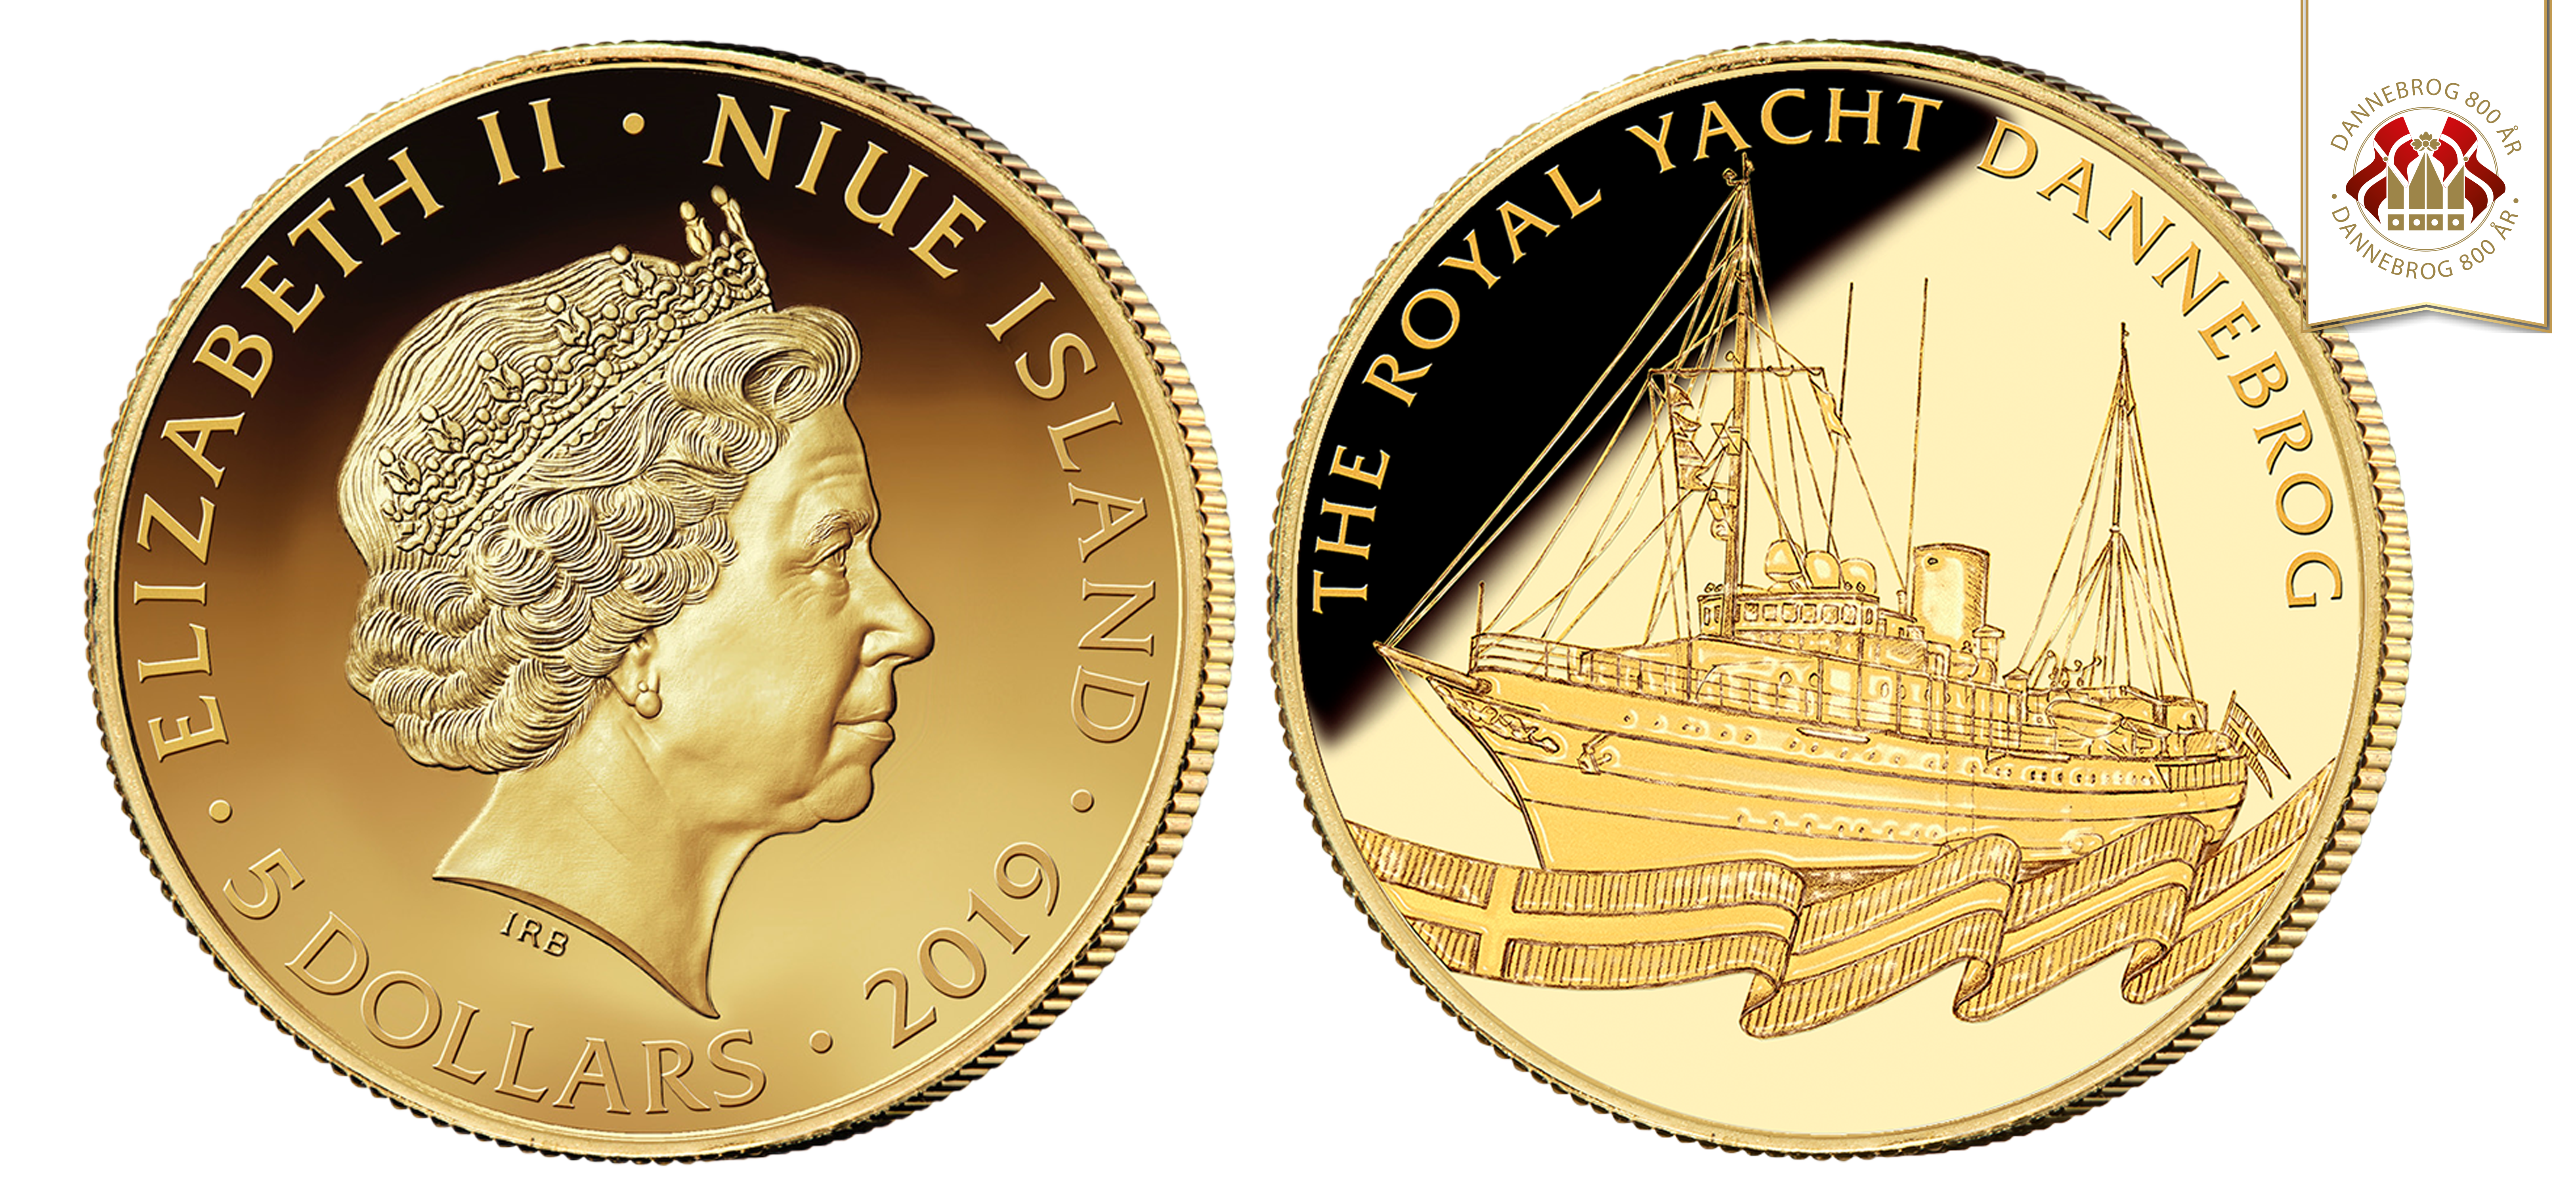 Køb denne eksklusive guldmønt online, i 24 karat guld, med et smukt og detaljeret motiv af kongeskibet Dannebrog til en pris på 3.500 kr.